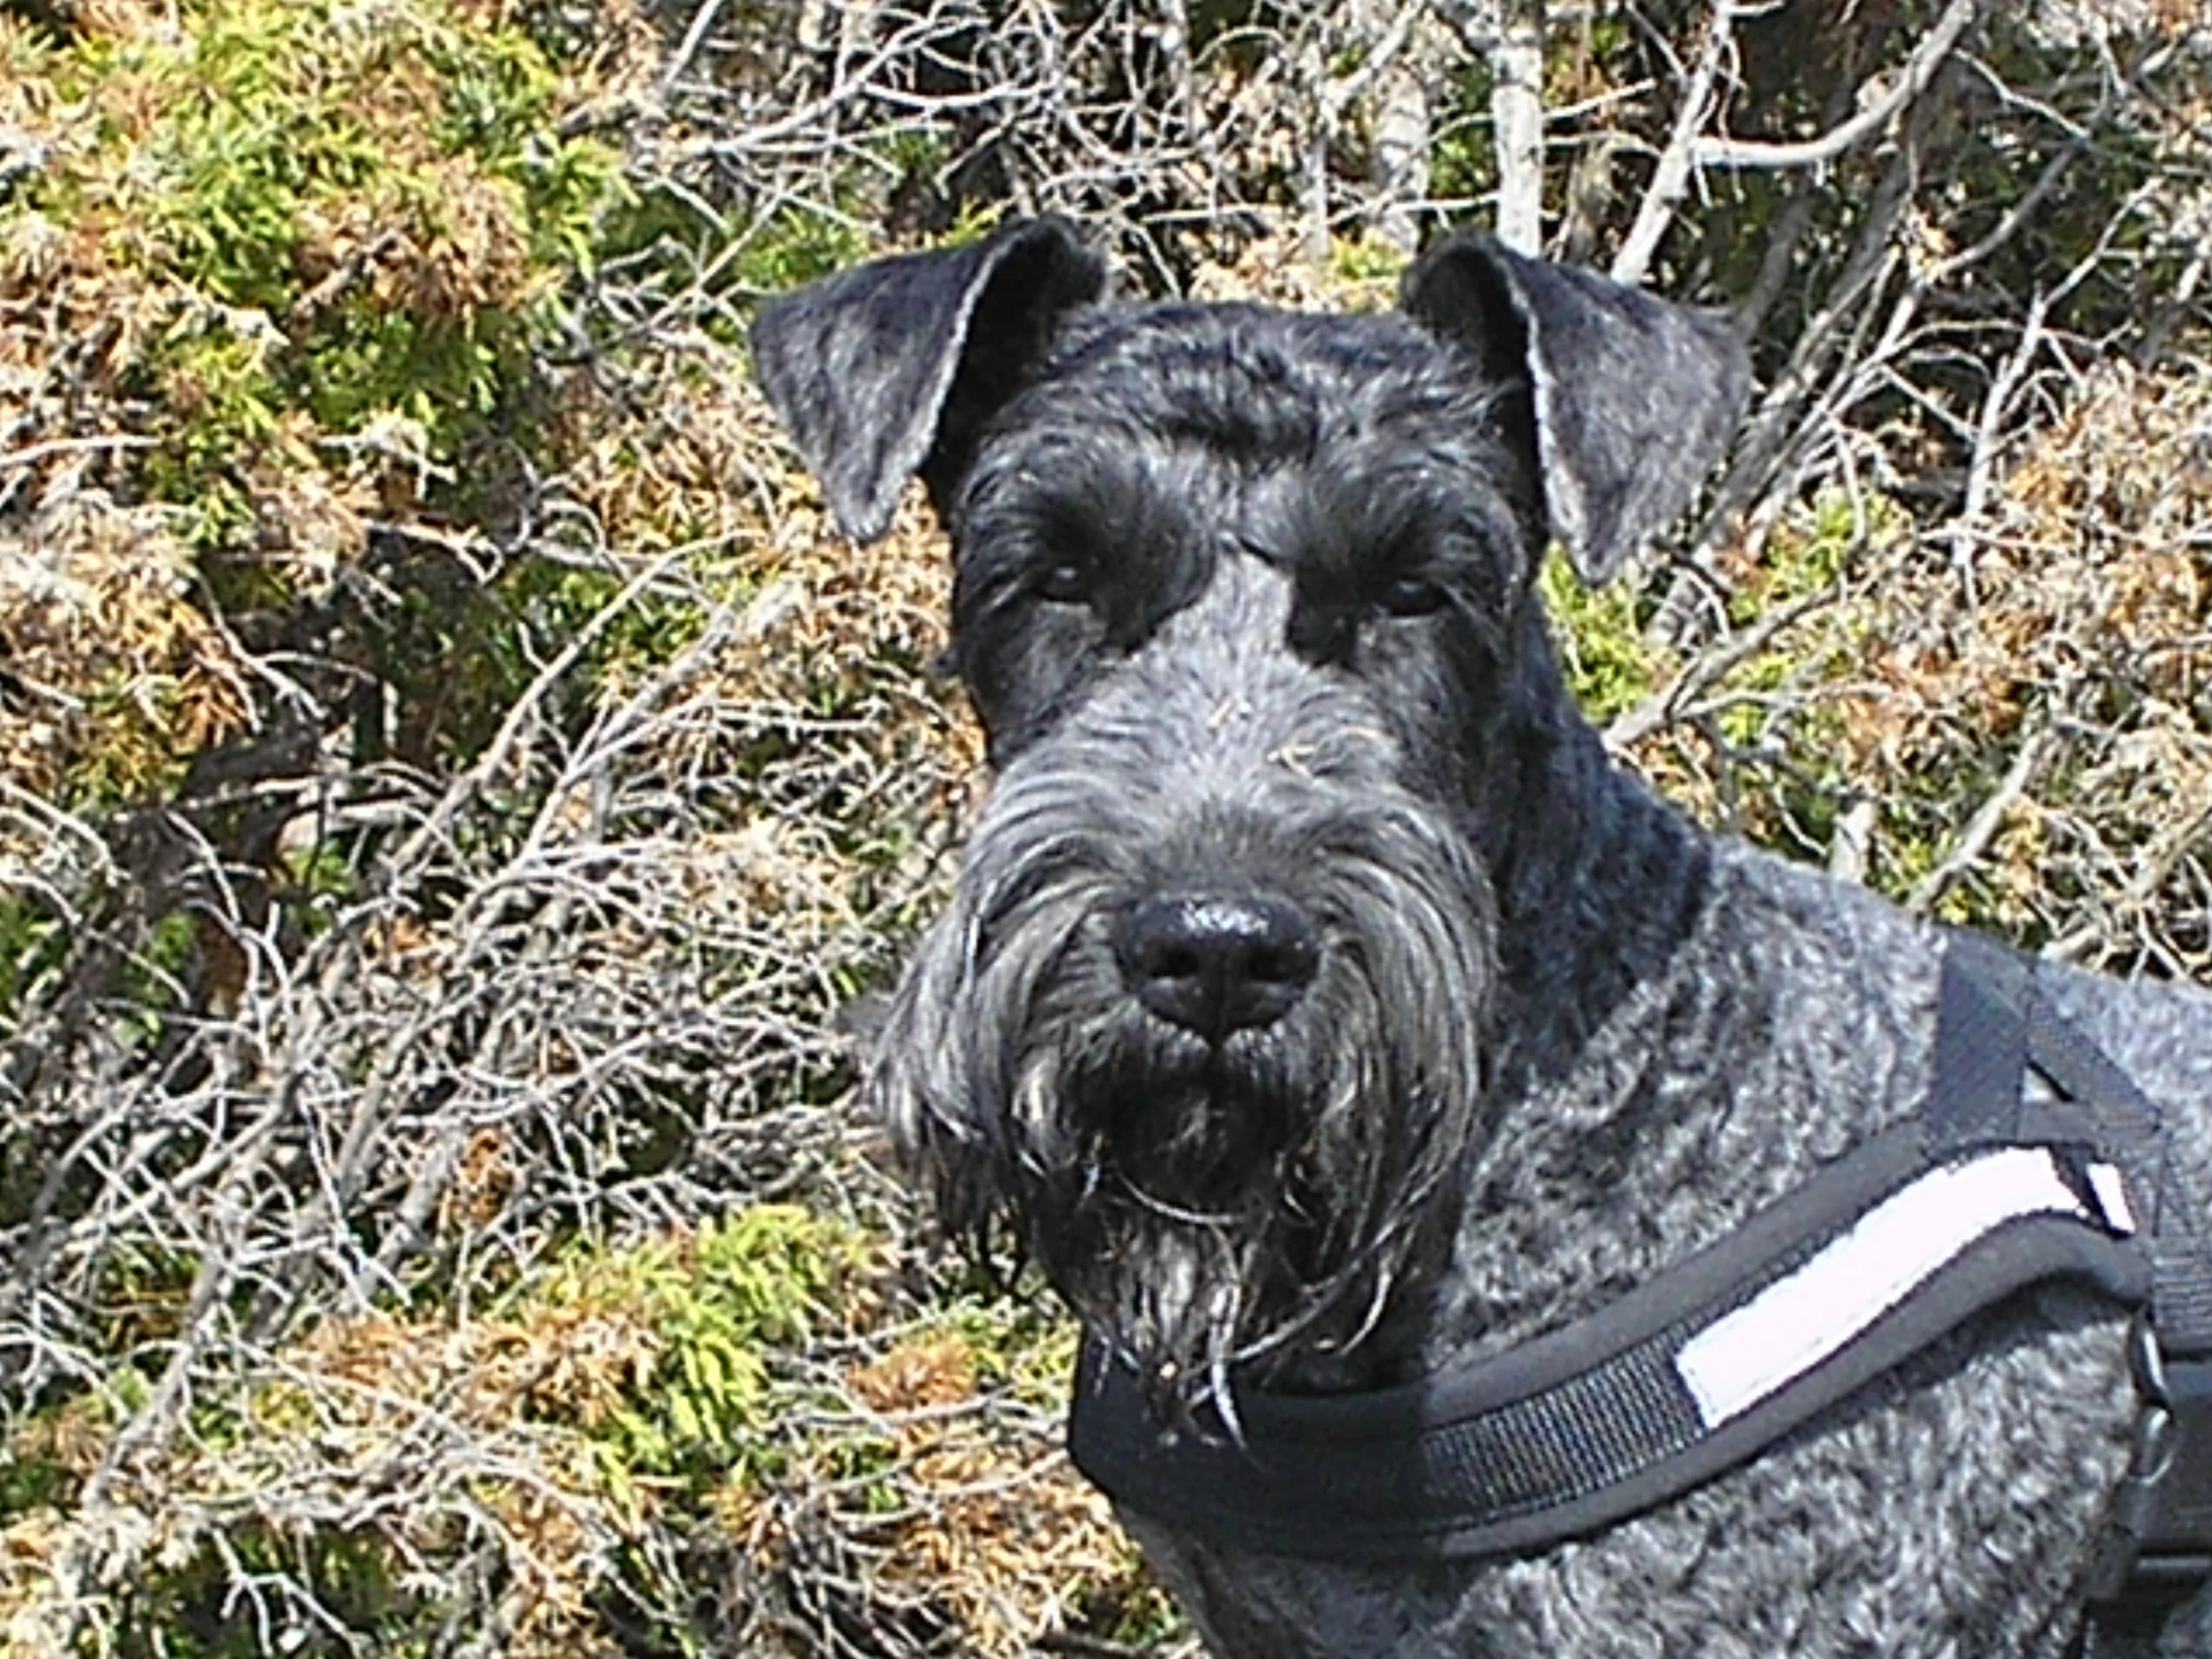 a grey dog wearing a harness near bushes